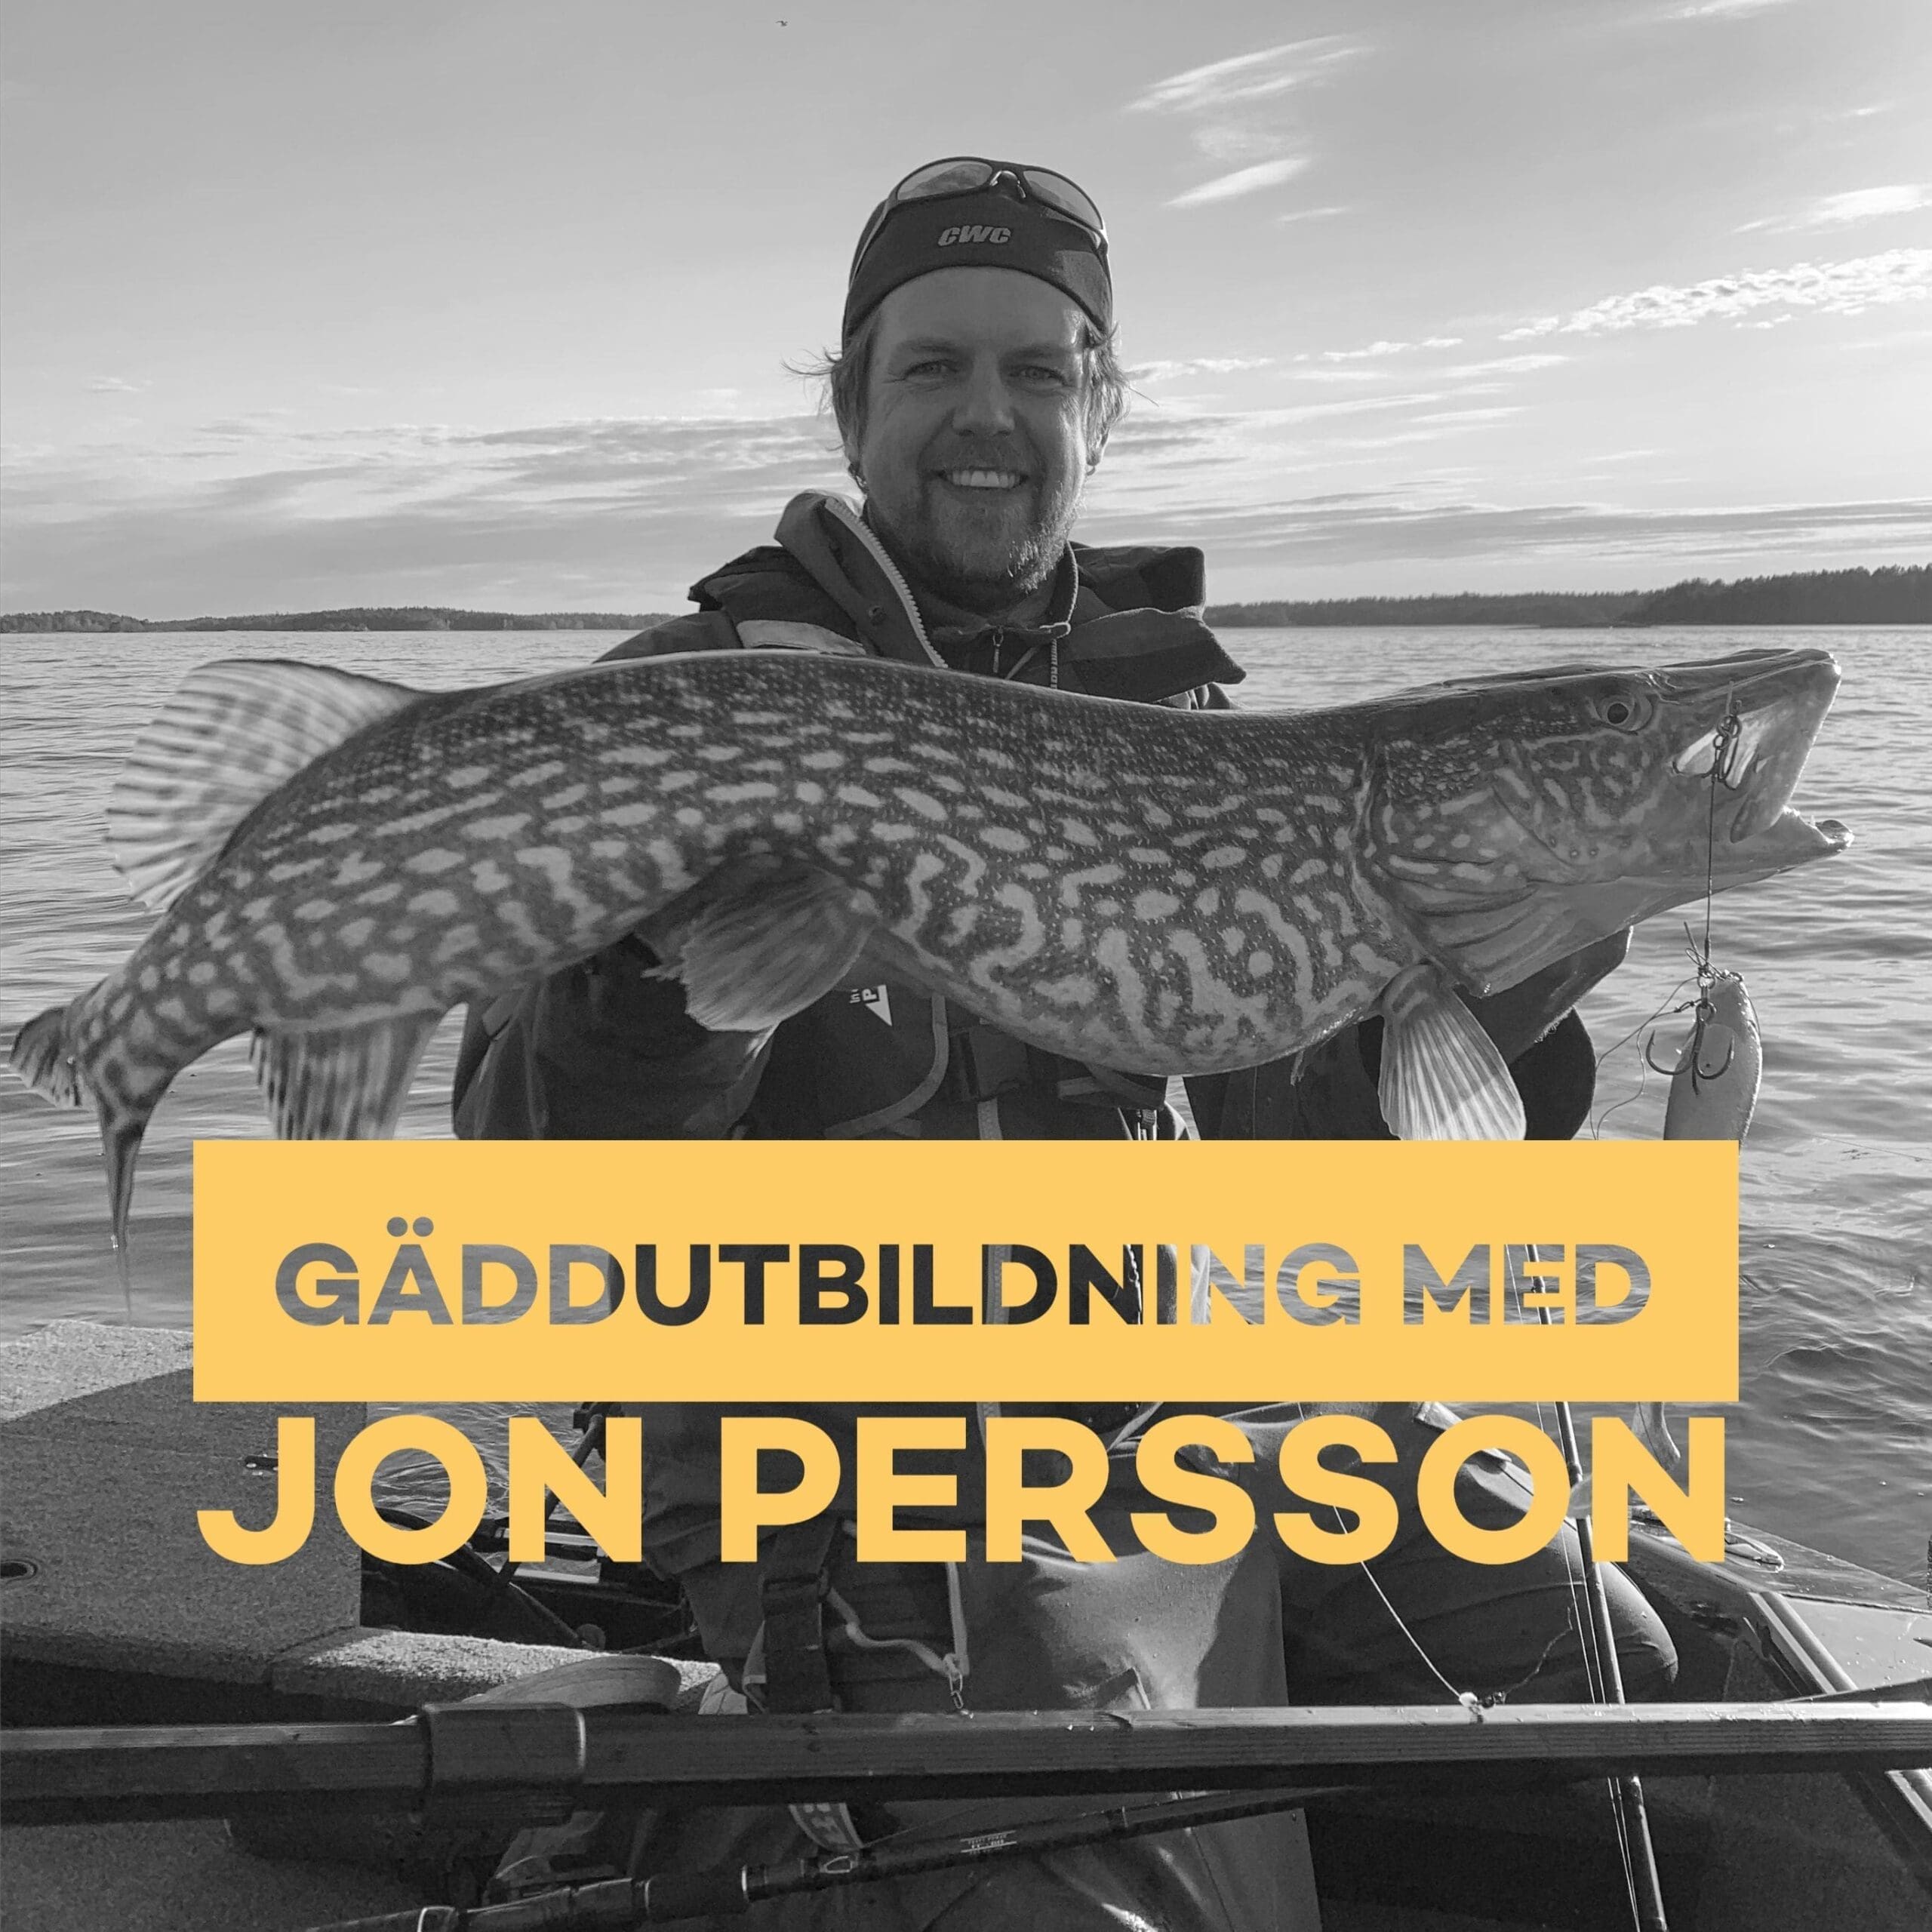 Gäddfiskeutbildning och guidning med Jon Persson från CWC